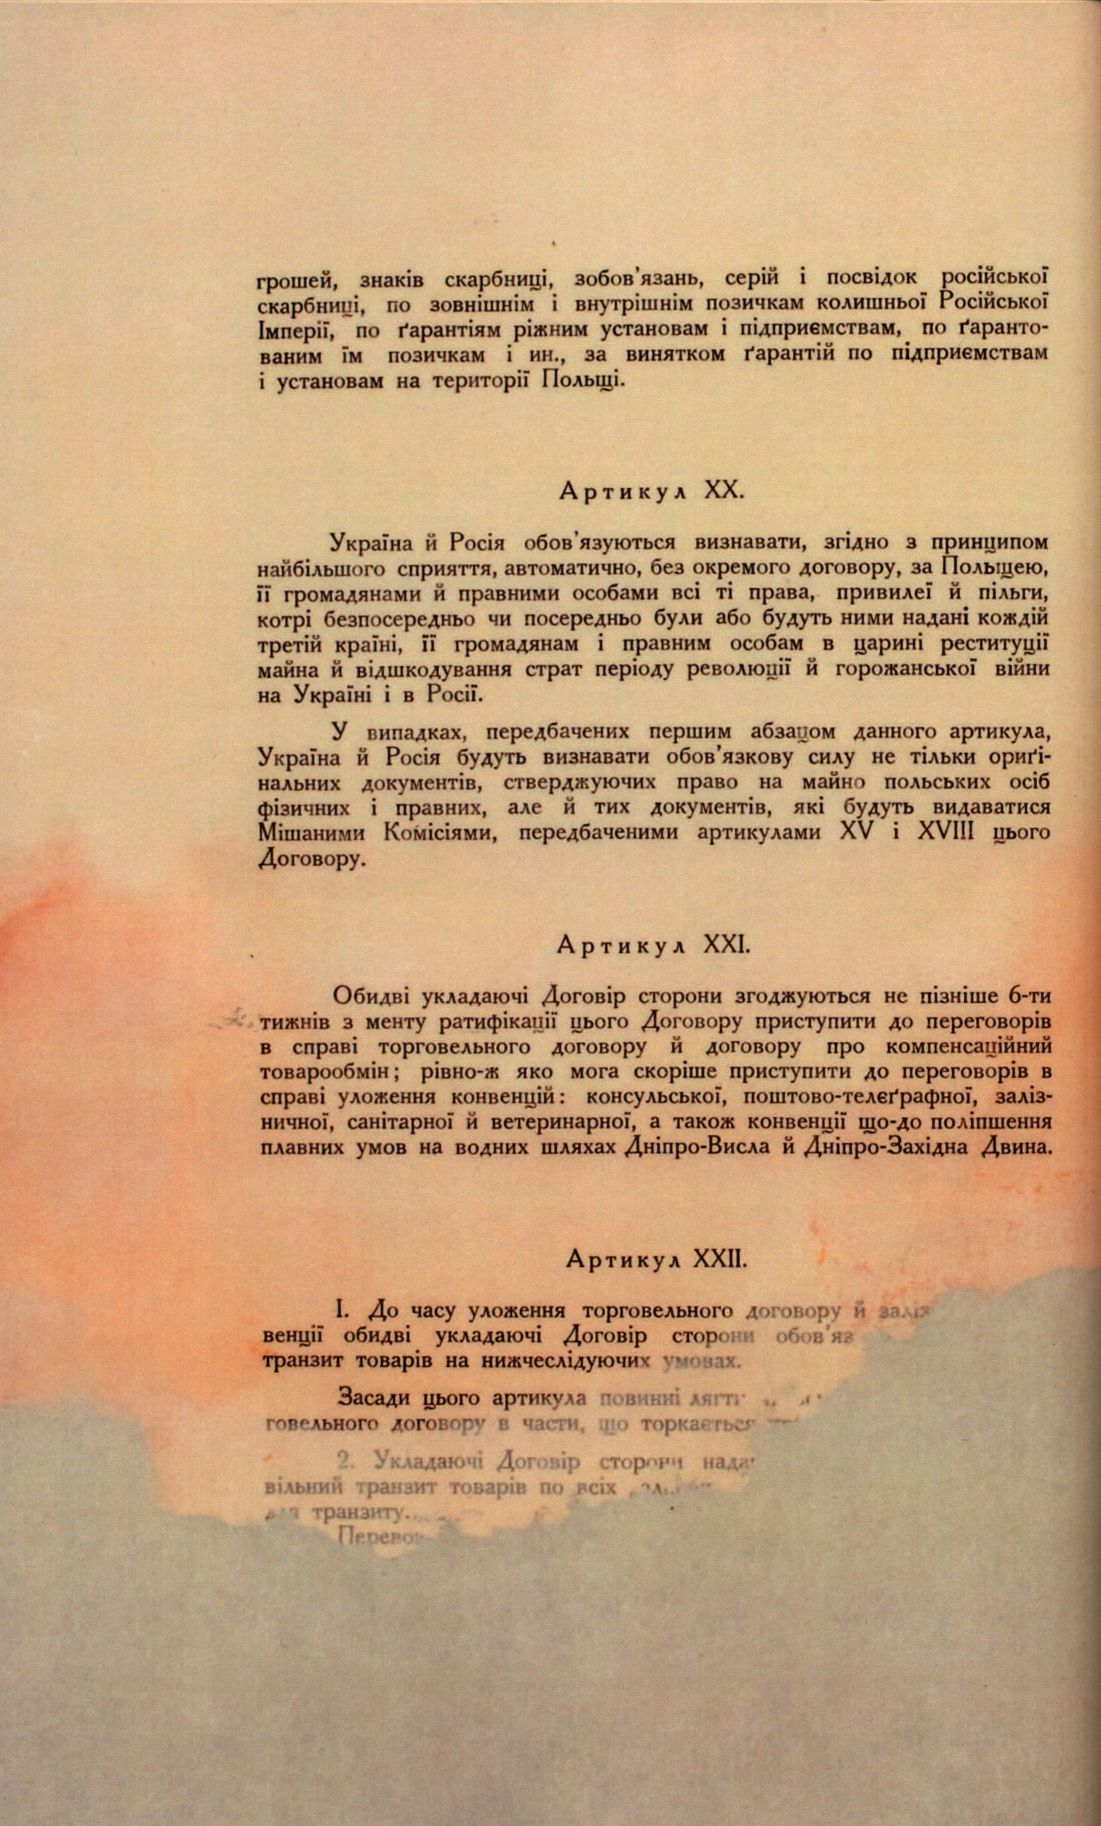 Traktat Pokoju między Polską a Rosją i Ukrainą podpisany w Rydze dnia 18 marca 1921 roku, s. 52, MSZ, sygn. 6739.